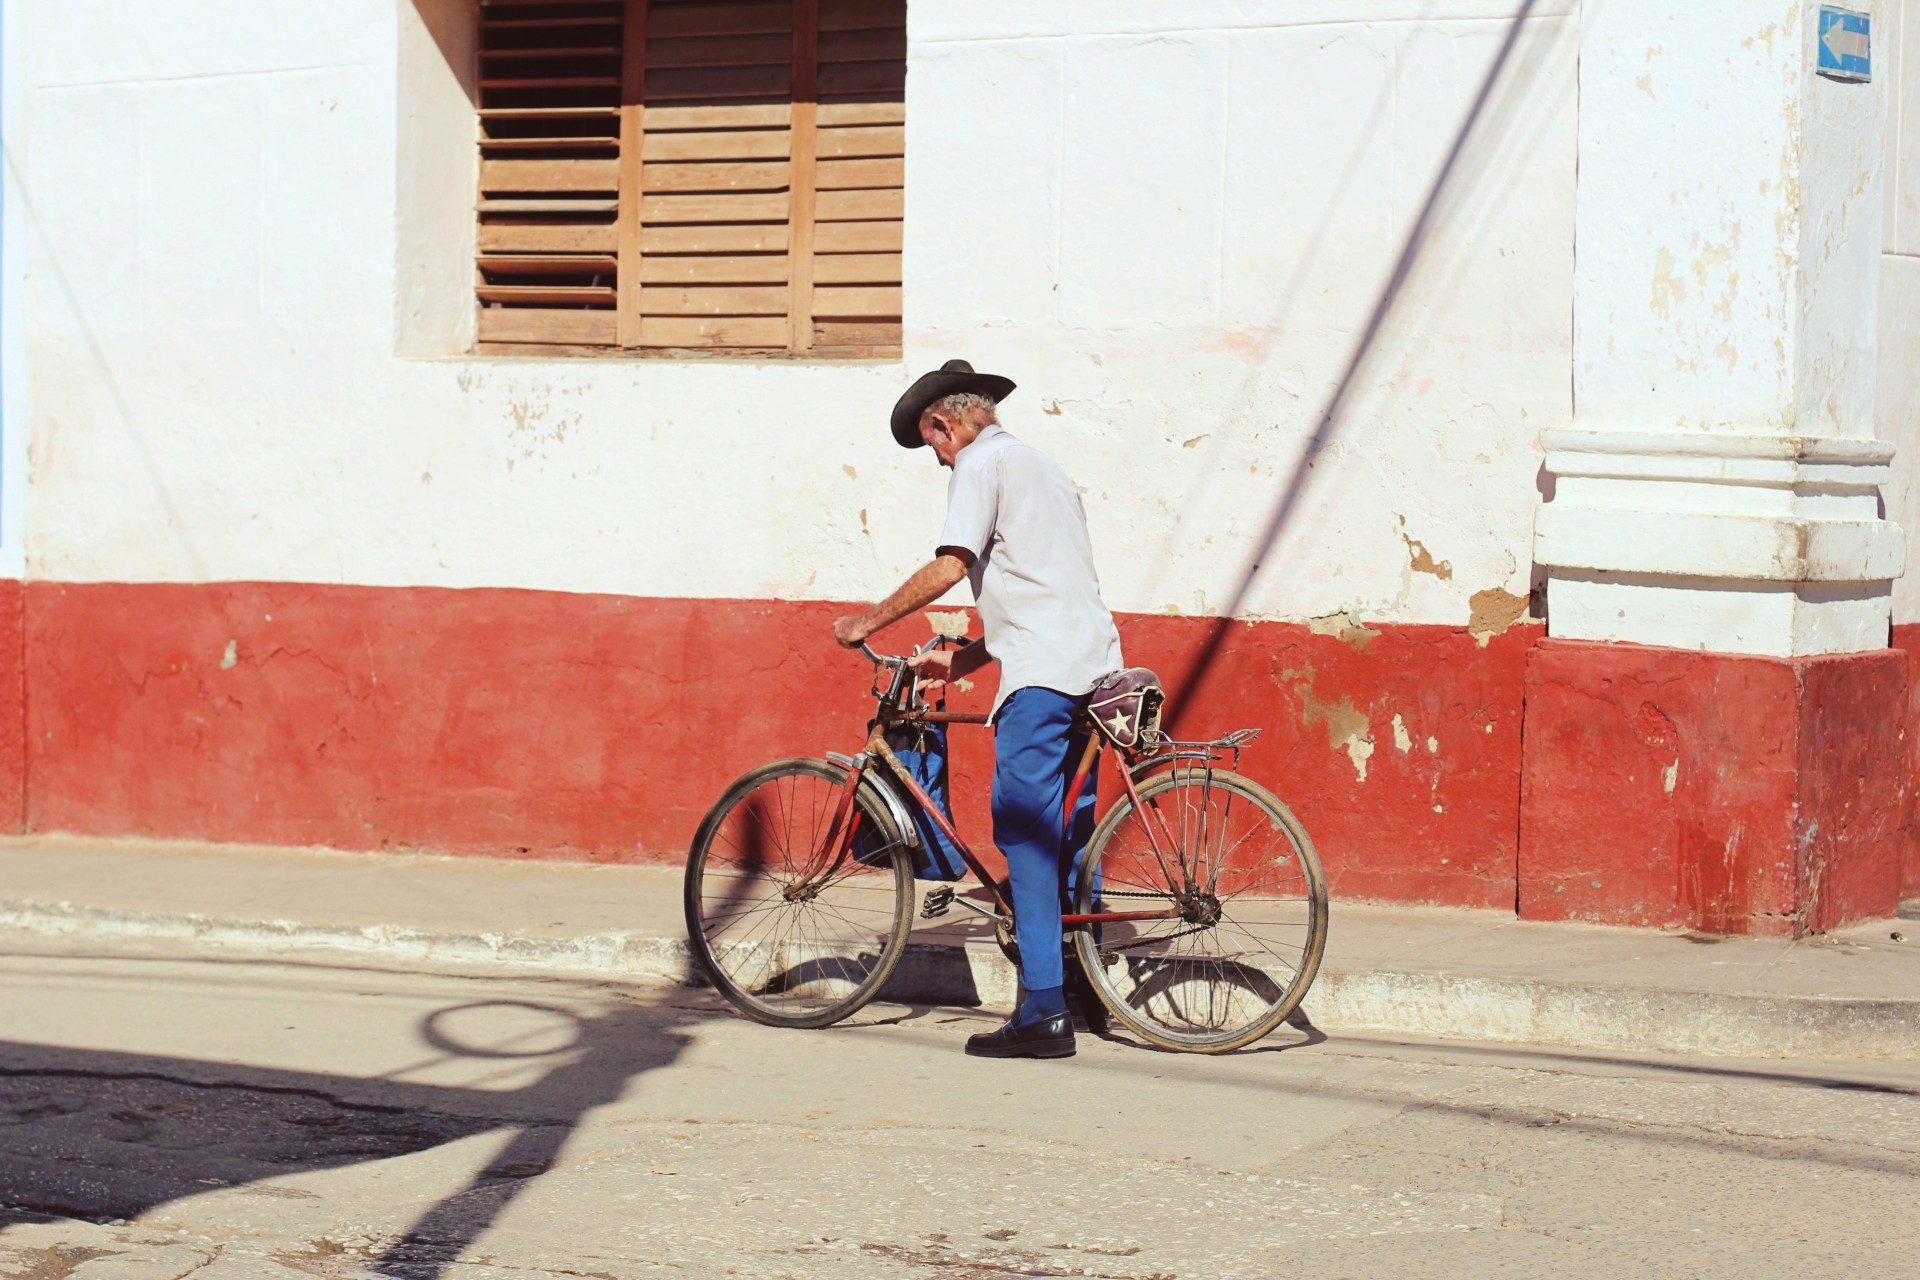 veraKoh. About Cuba